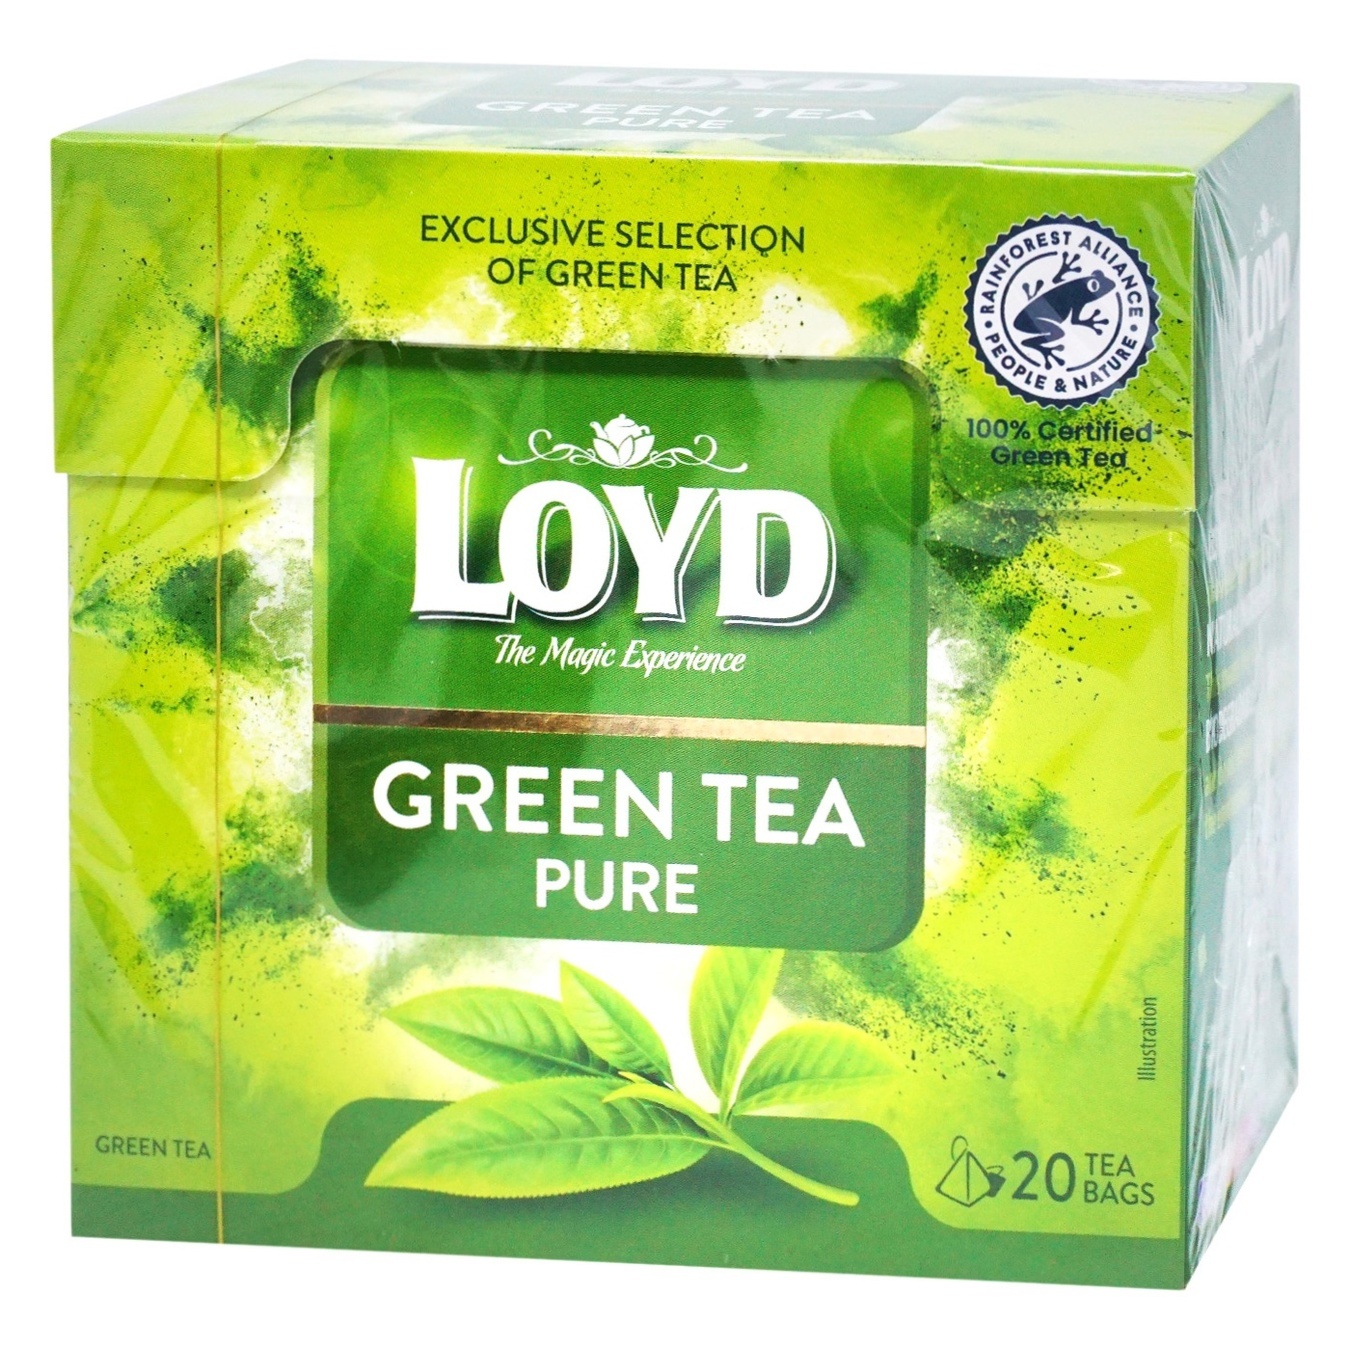 LOYD pure green tea 17g*20pcs